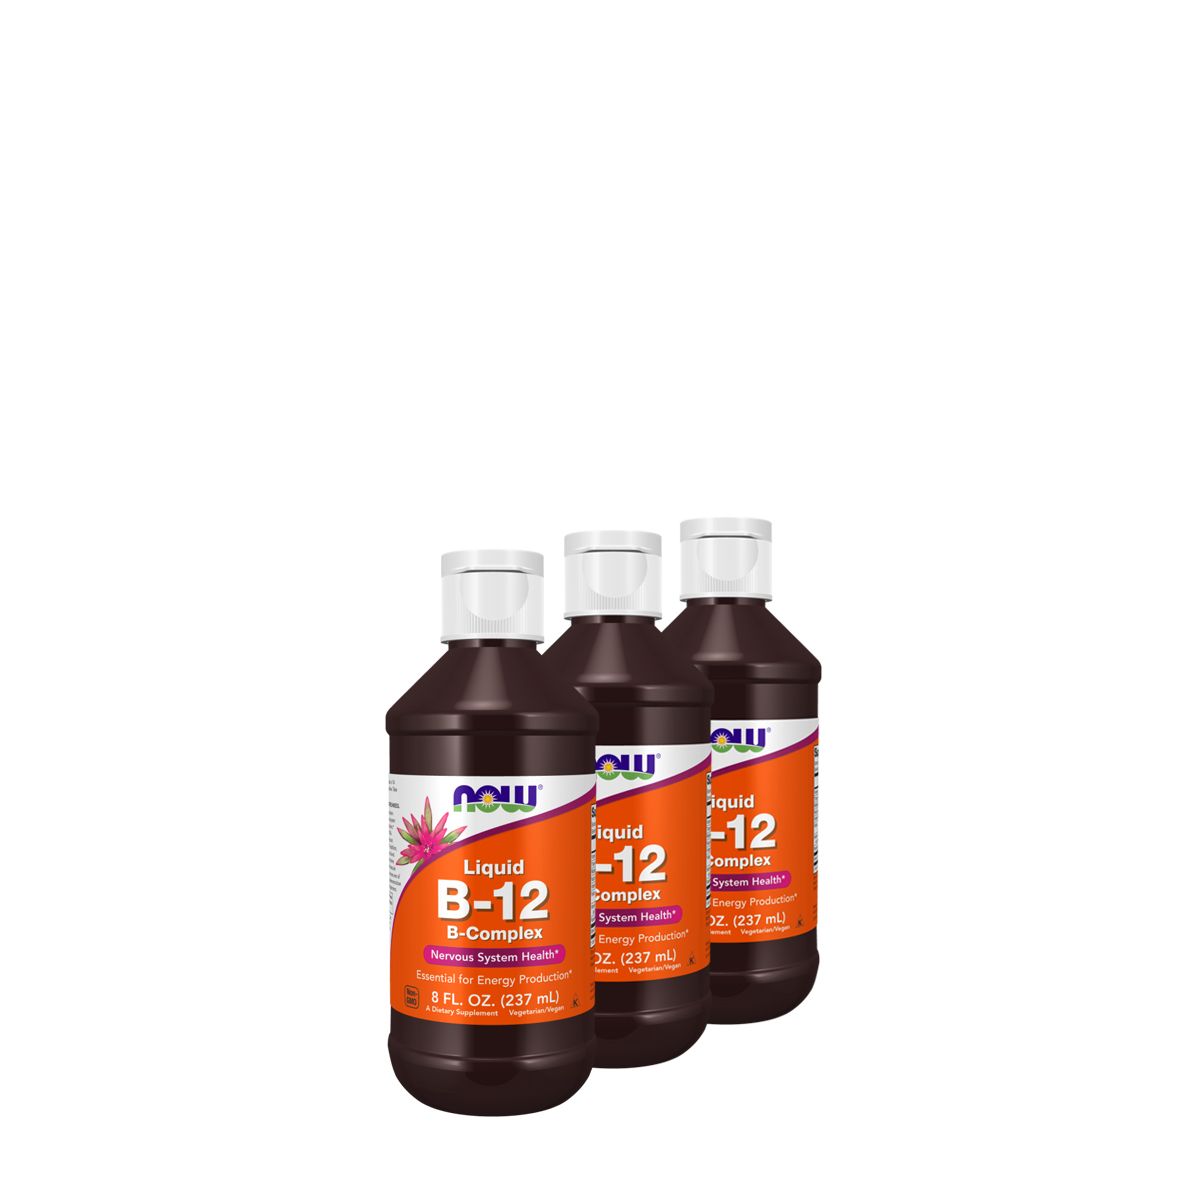 Folyékony B-12 vitamin komplex, Now B-12 Liquid, 3x237 ml